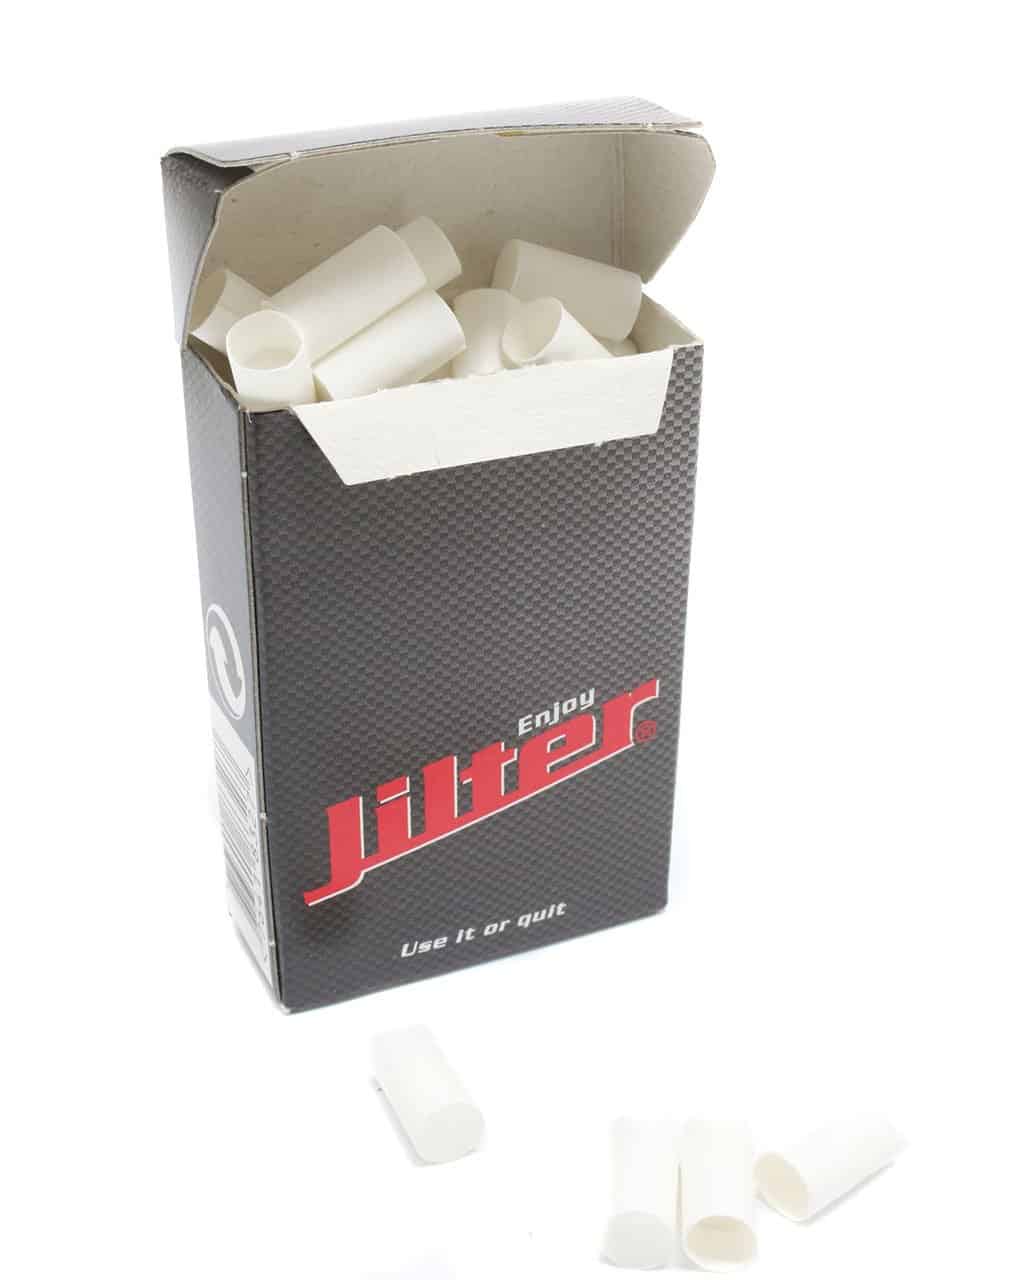 Jilter's - Zigaretten Filter aus Watte